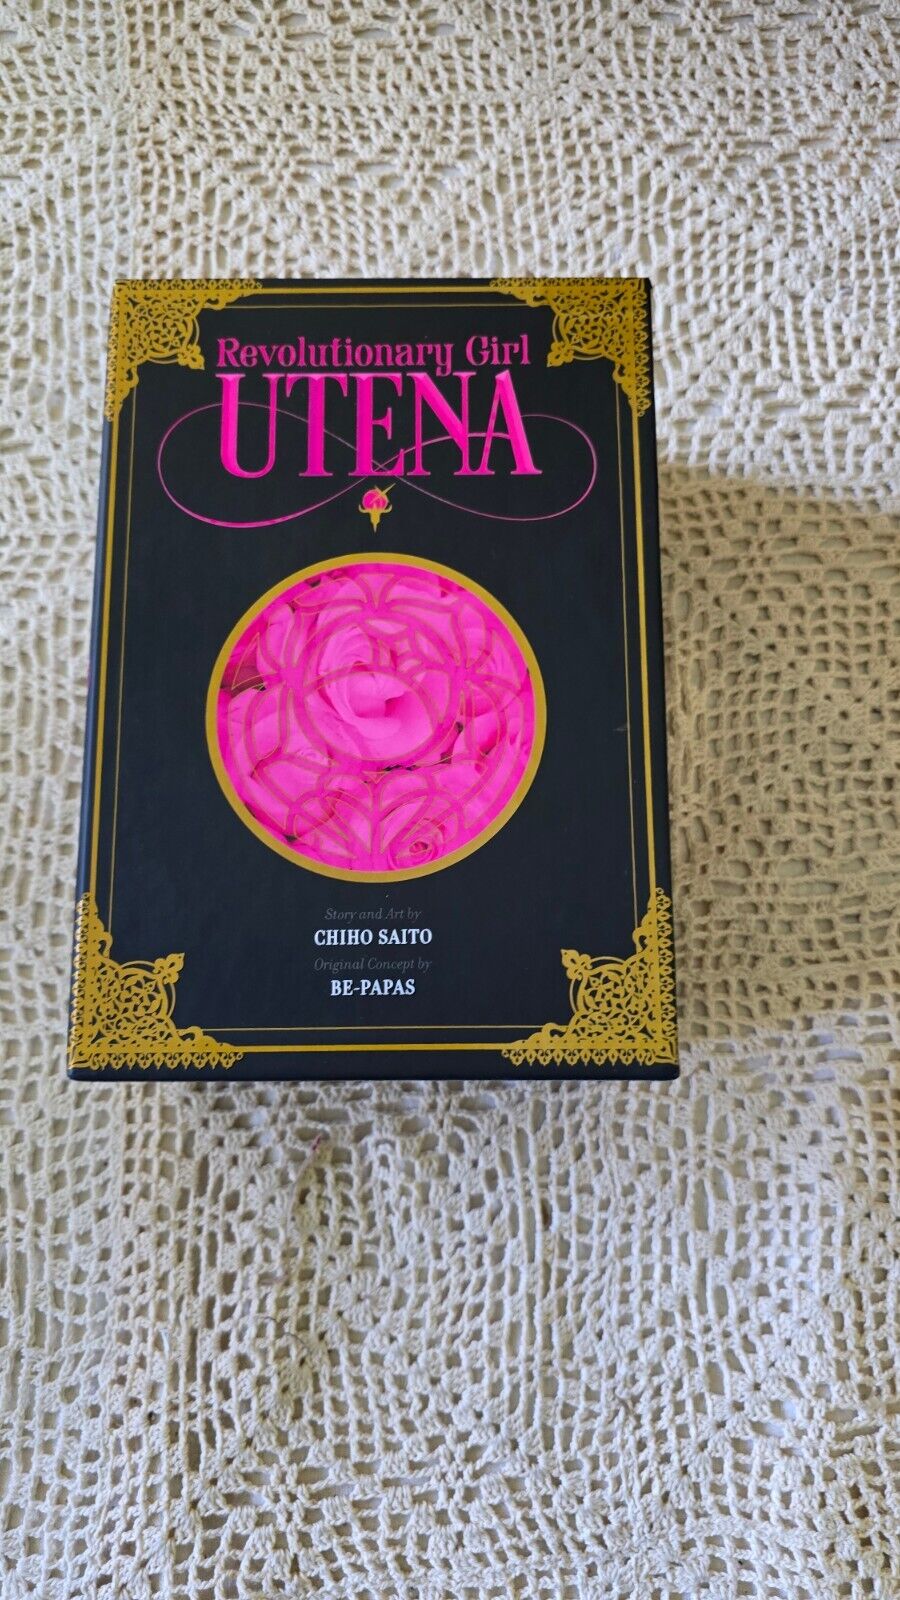 Revolutionary Girl Utena Complete Deluxe Manga Box Set Hardcover